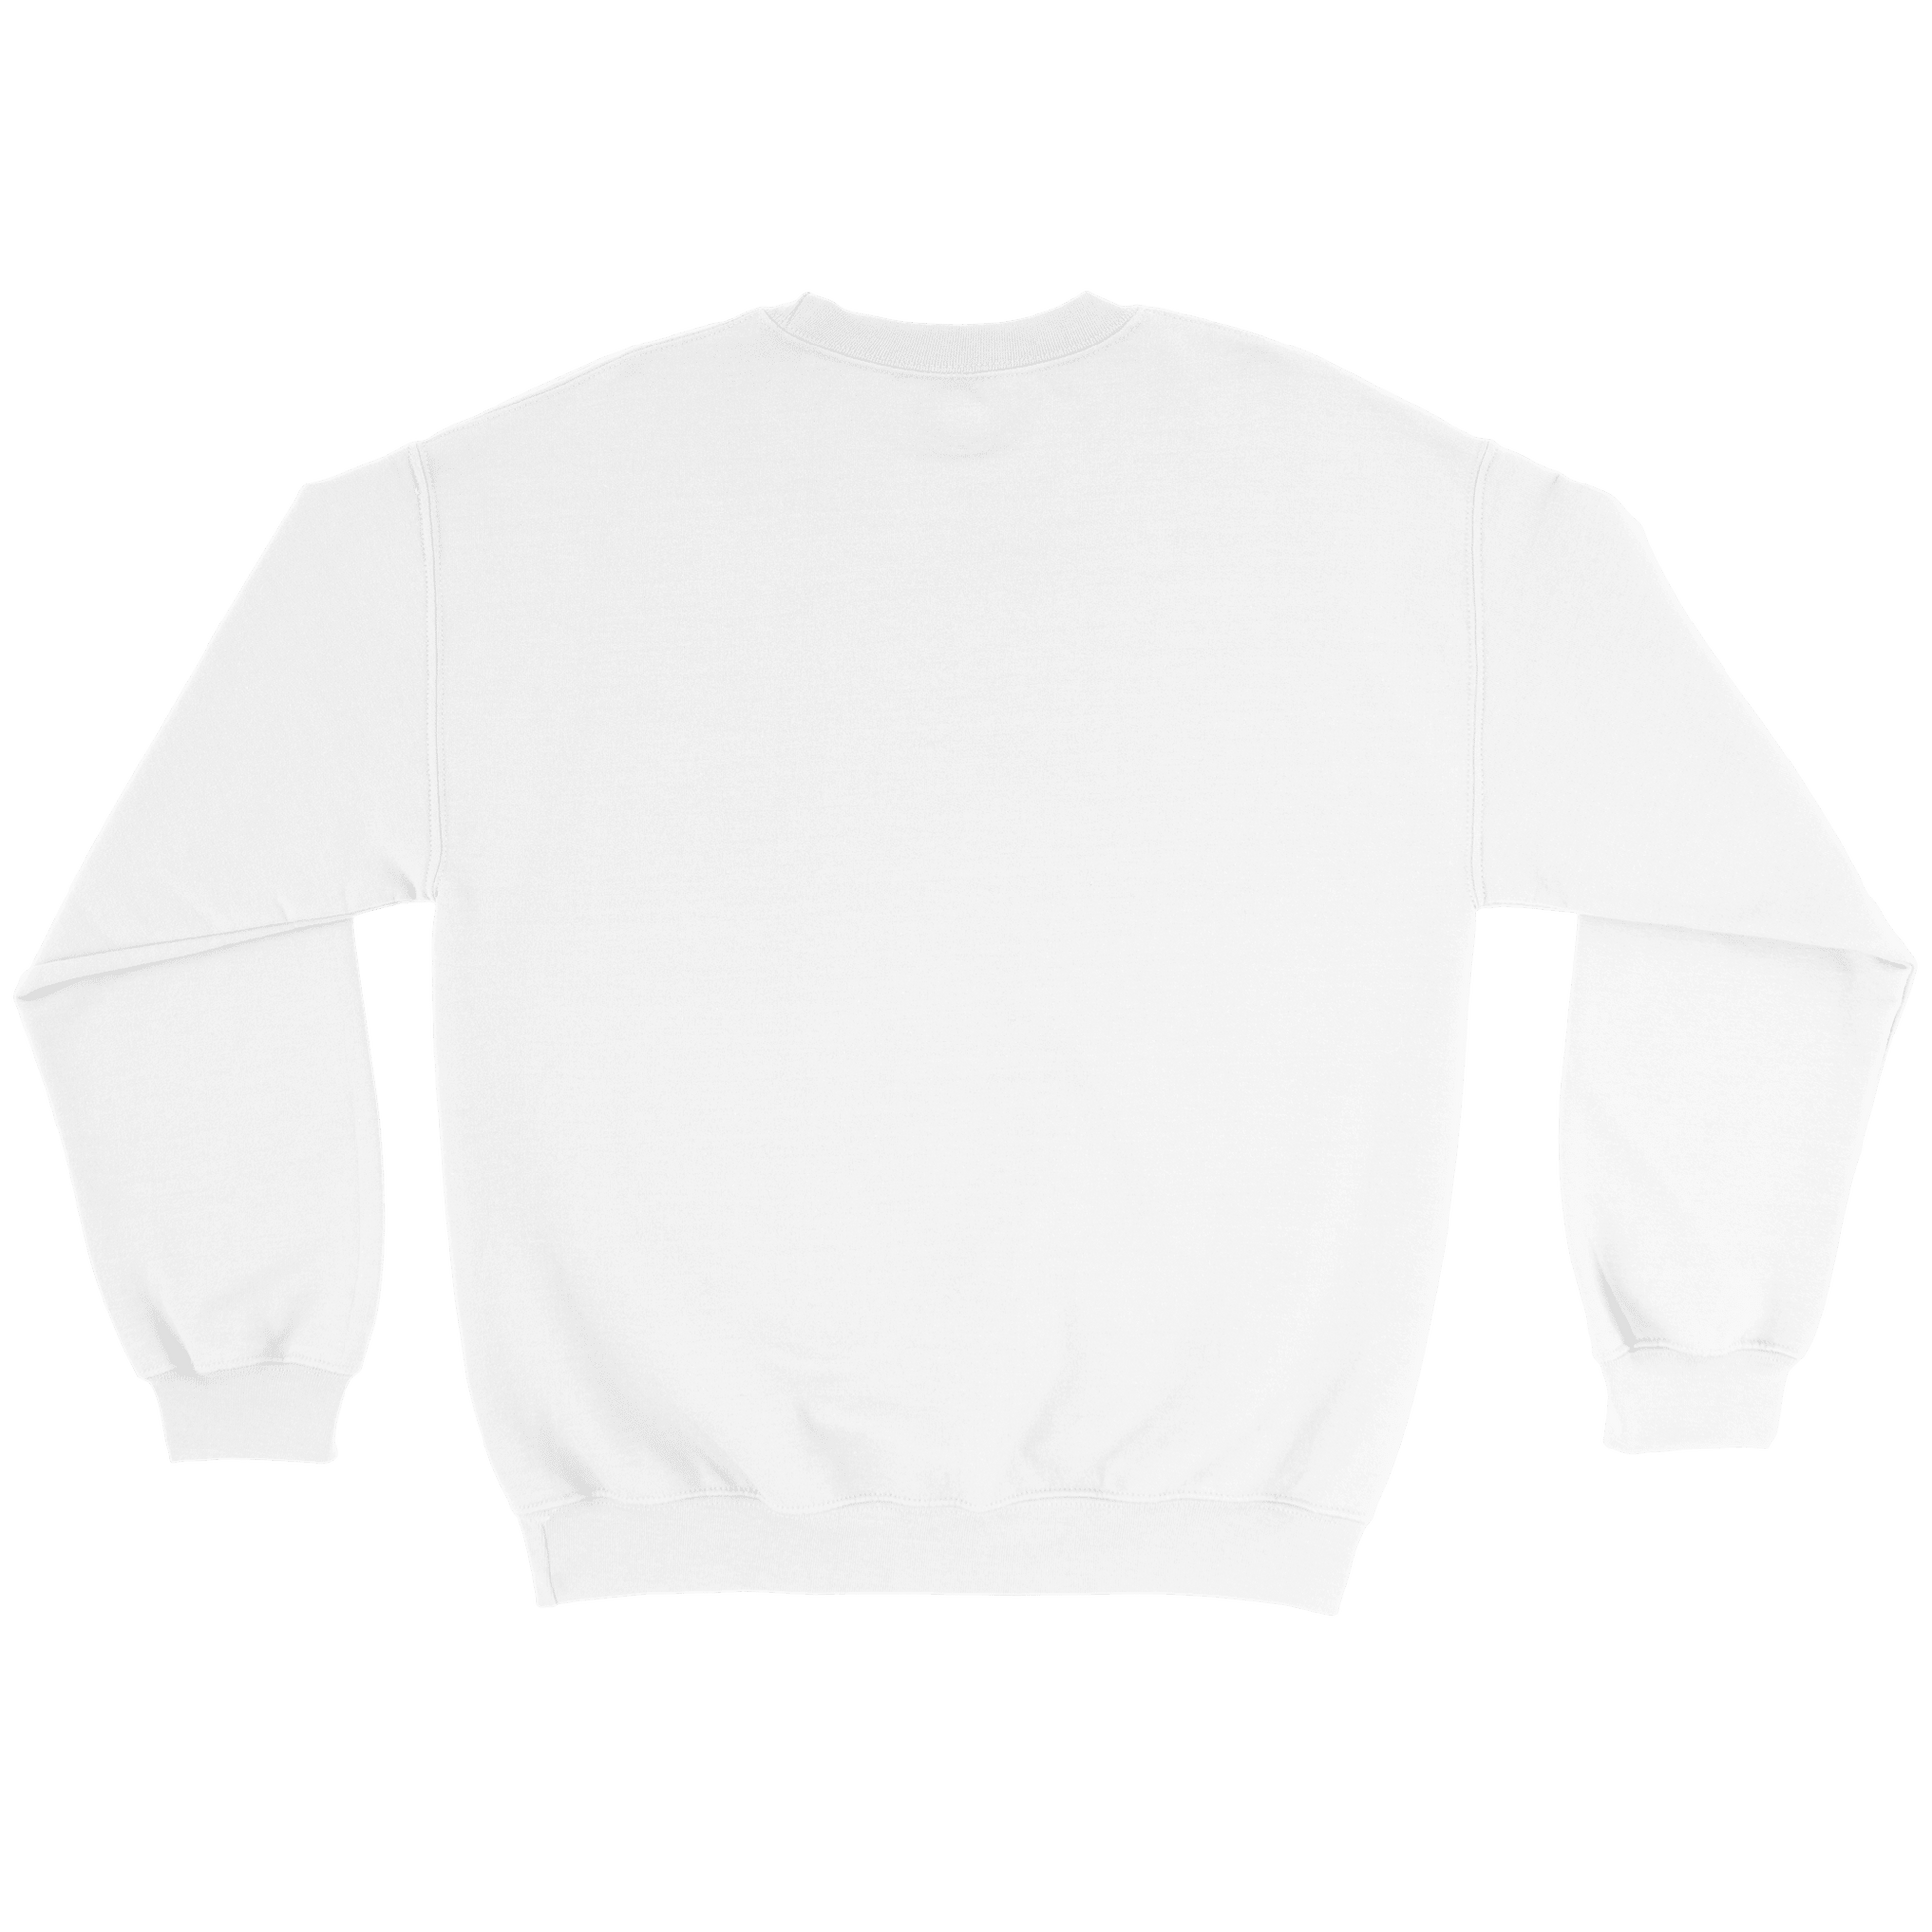 Vörtbröd - Sweatshirt 